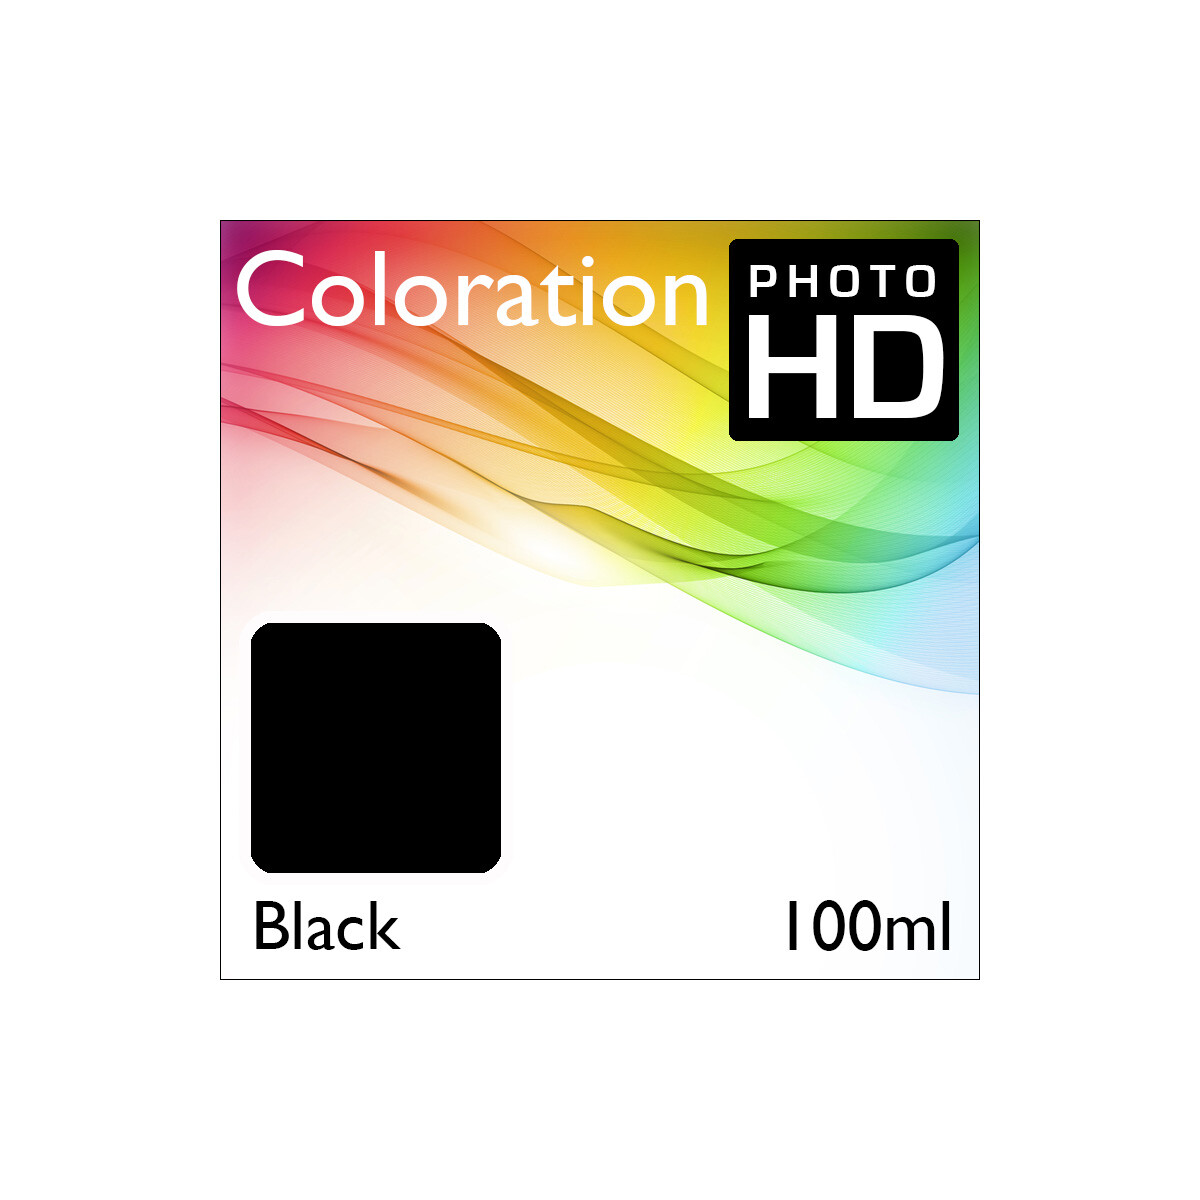 Coloration PhotoHD Bottle Black 100ml